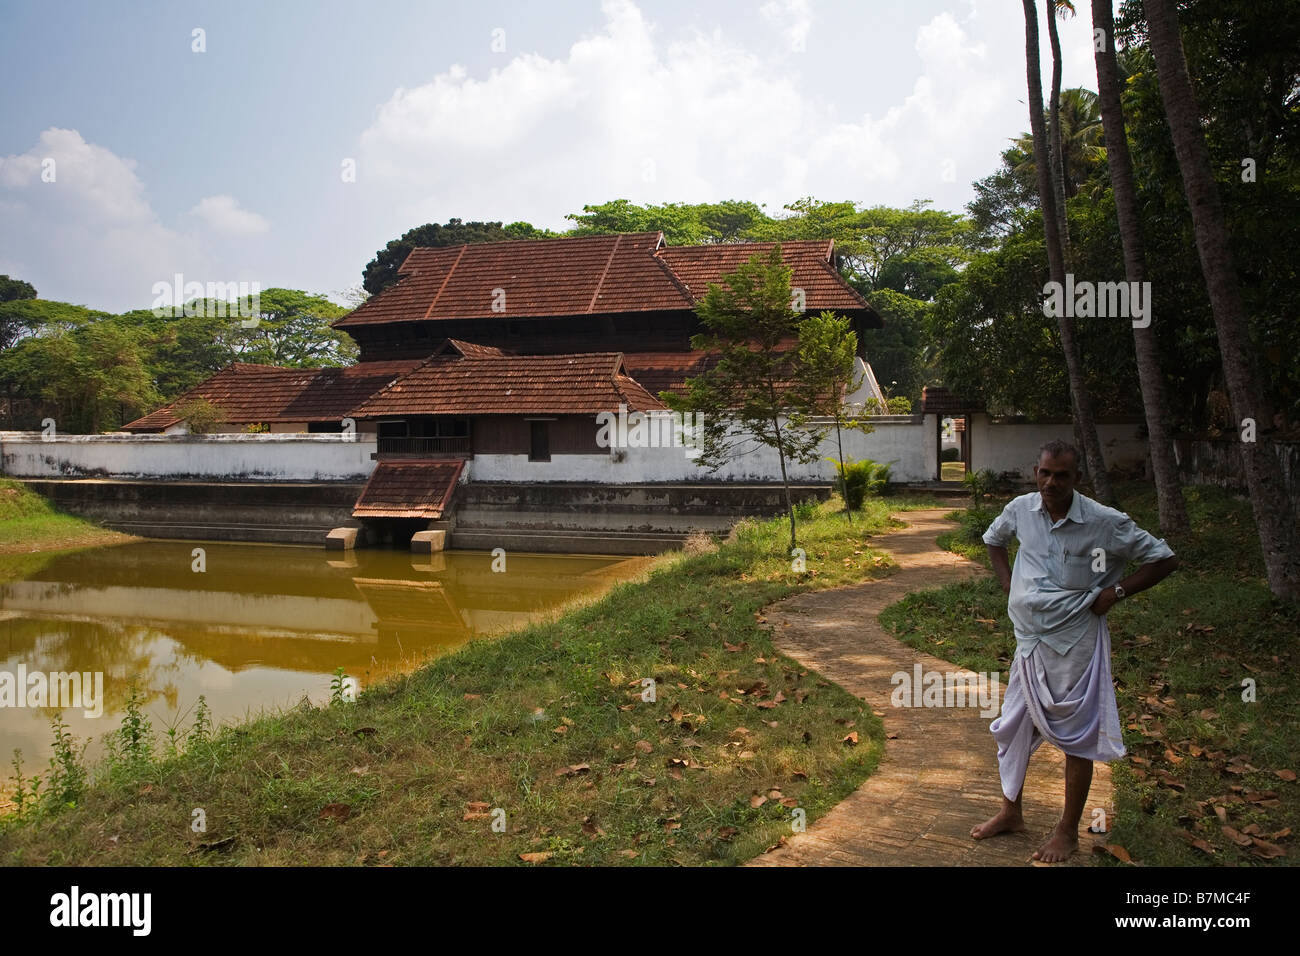 Le gardien et Krishnapuram Palace Museum de Kayamkulam au Kerala Inde Banque D'Images